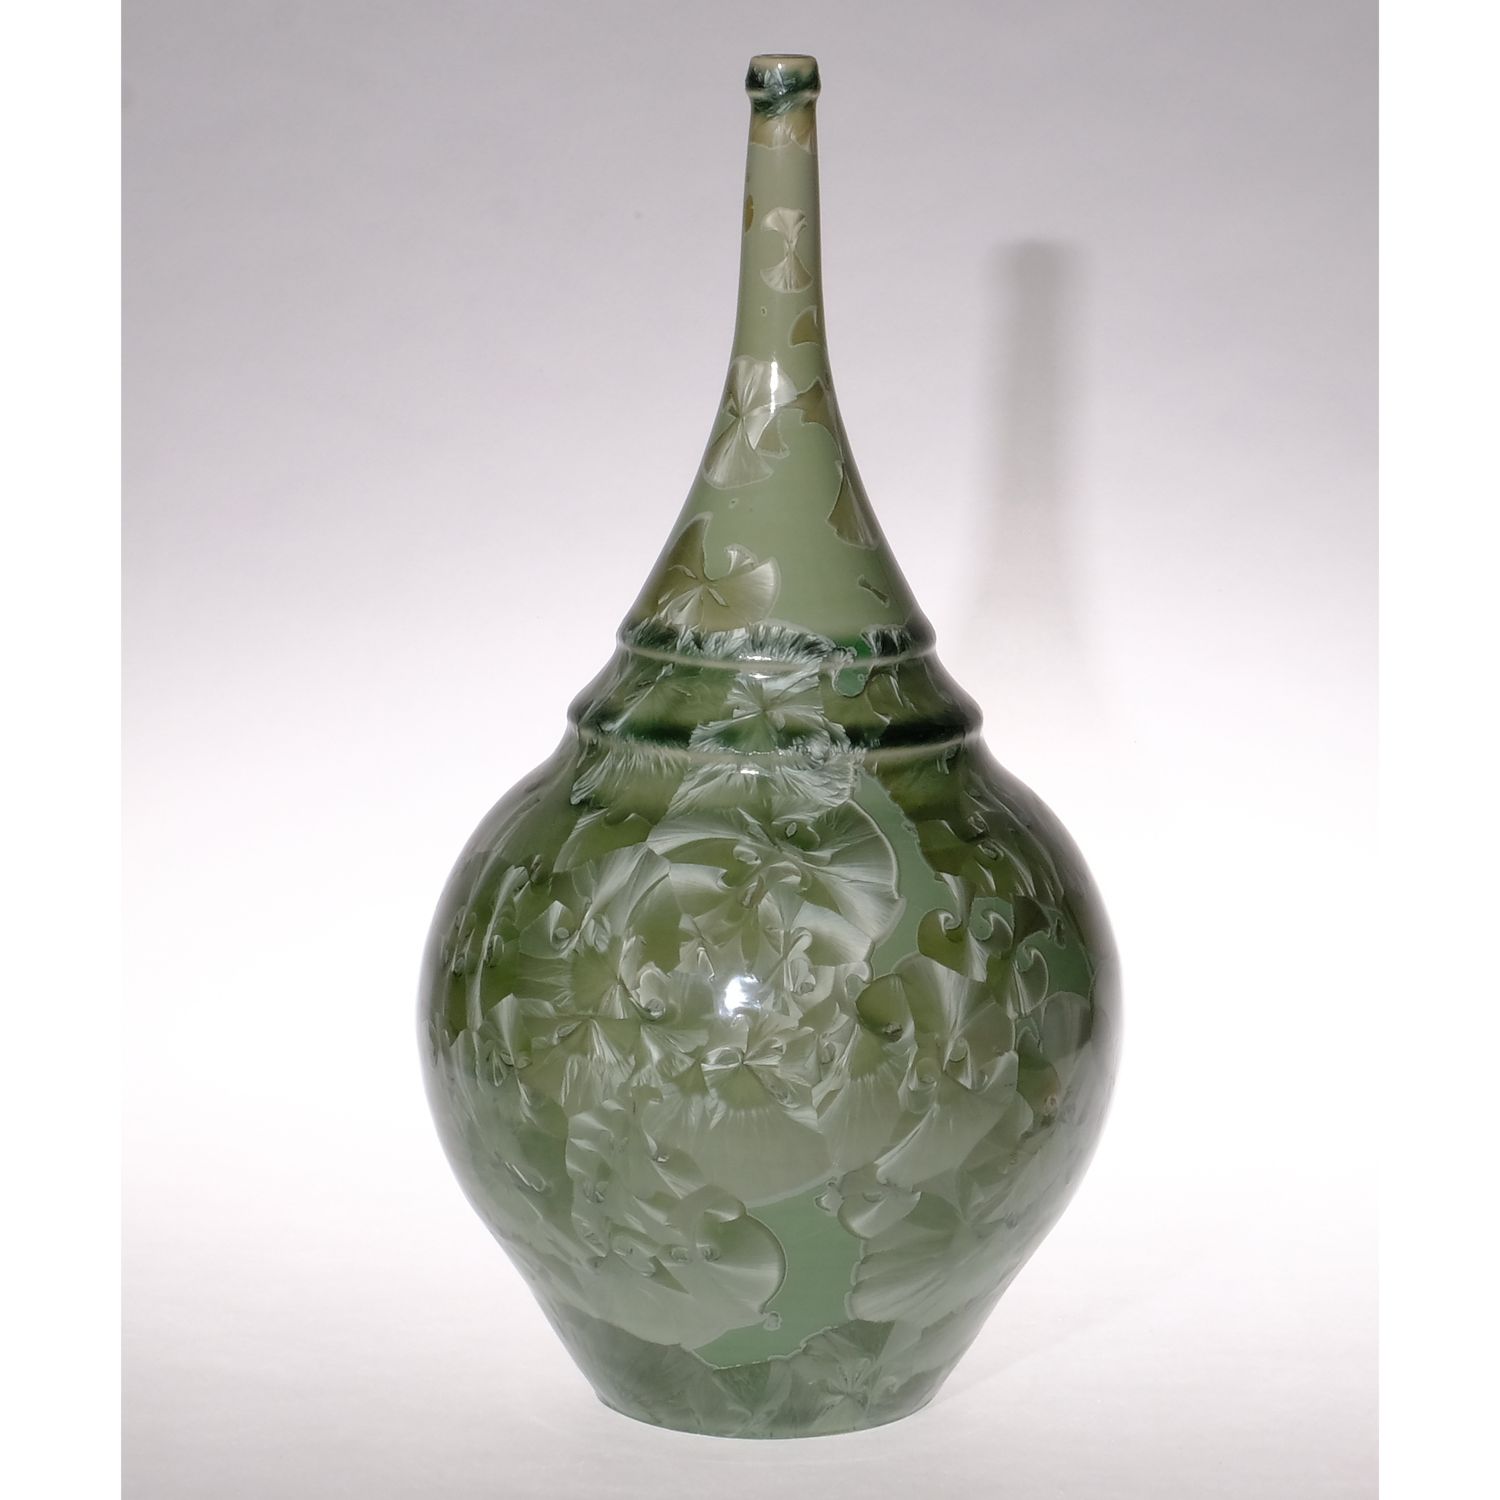 Yumiko Katsuya: Gold on Green Long Neck Vase Product Image 1 of 4